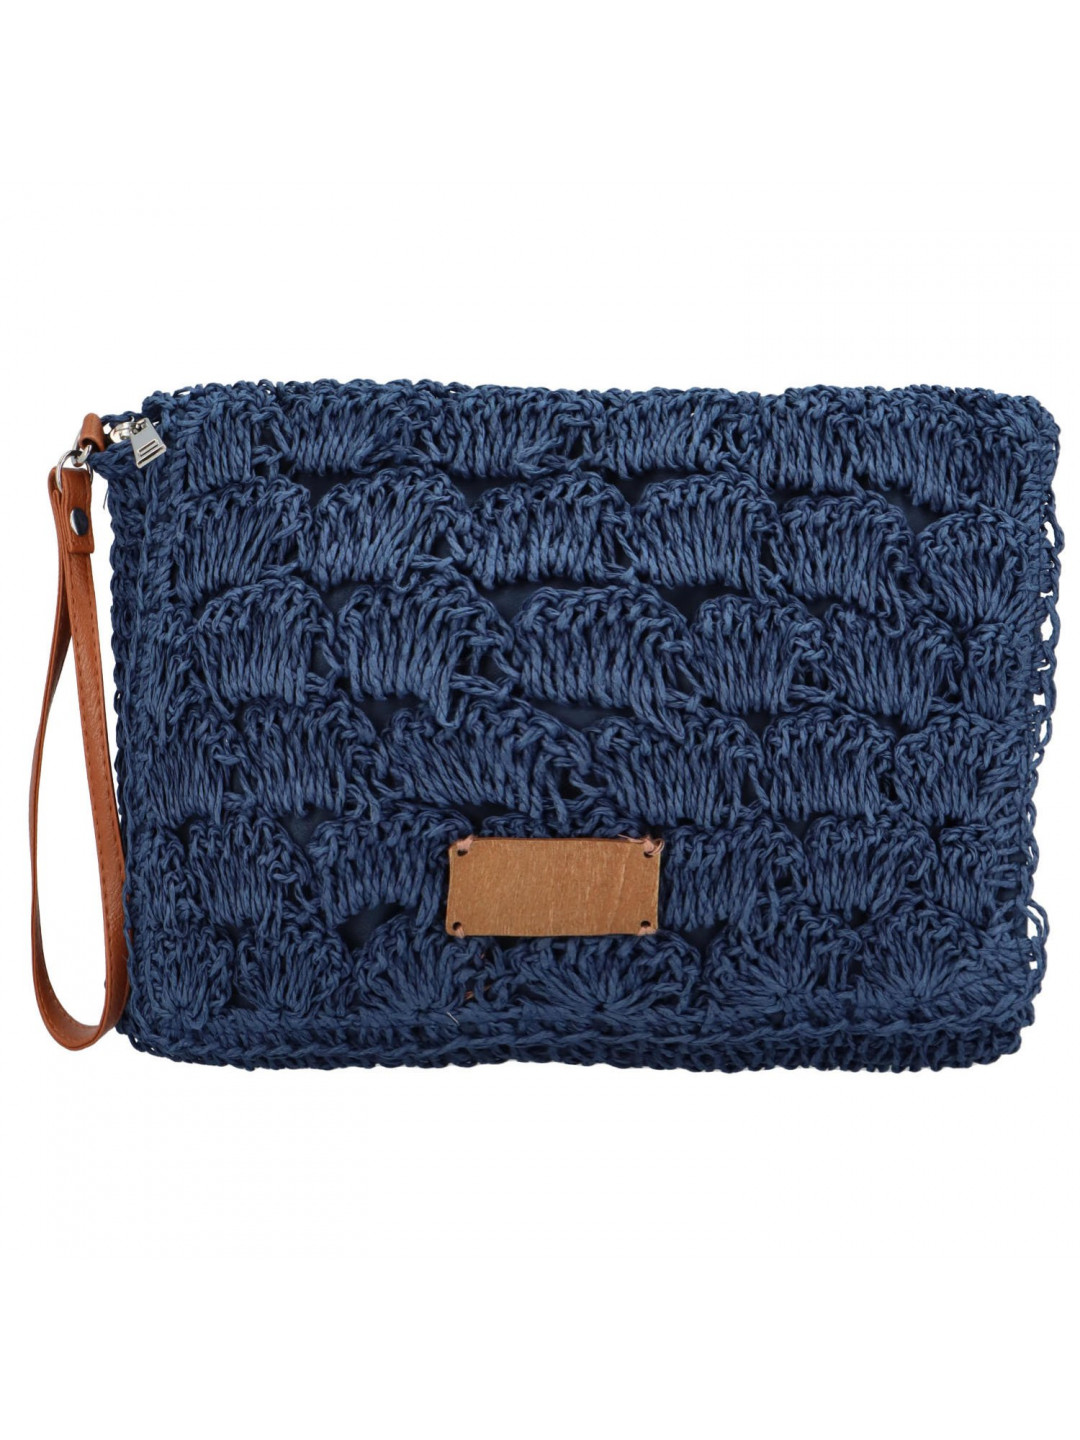 Měkká kabelka do ruky s pleteným vzorem Vivalo tmavě modrá